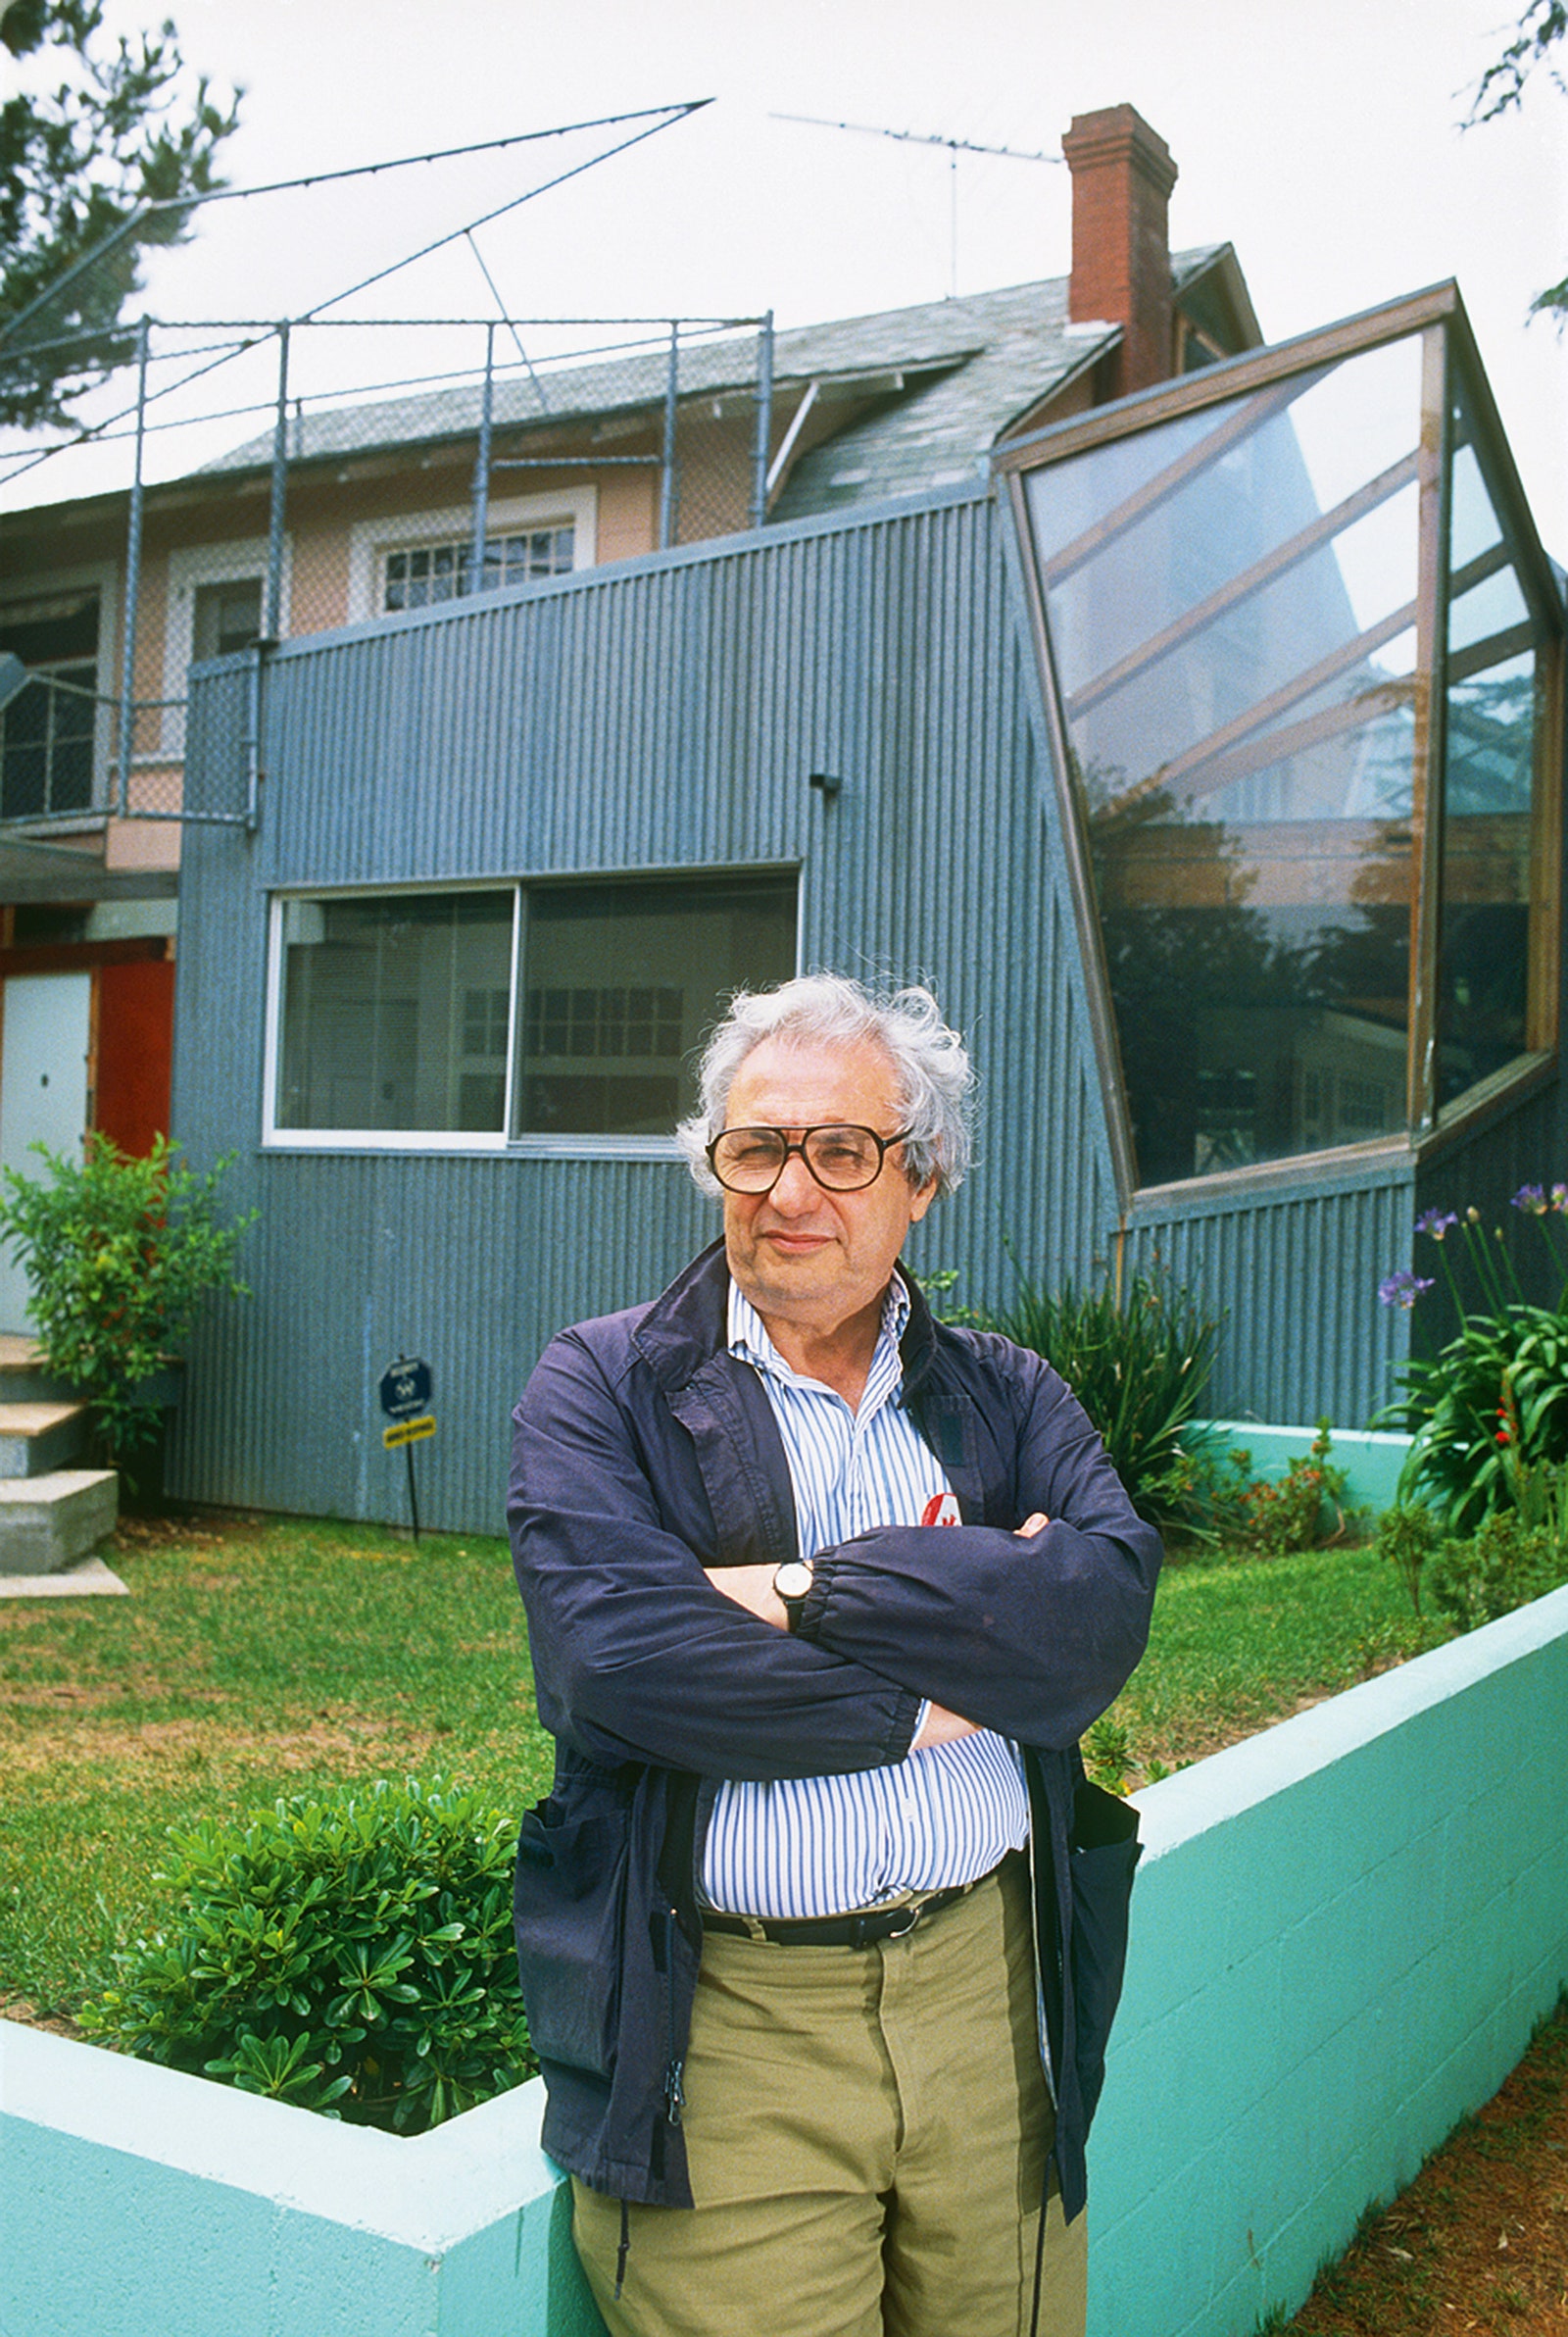 Фрэнк Гери у своего дома в СантаМонике который он постоянно достраивал и перестраивал. Фото 1988 года.